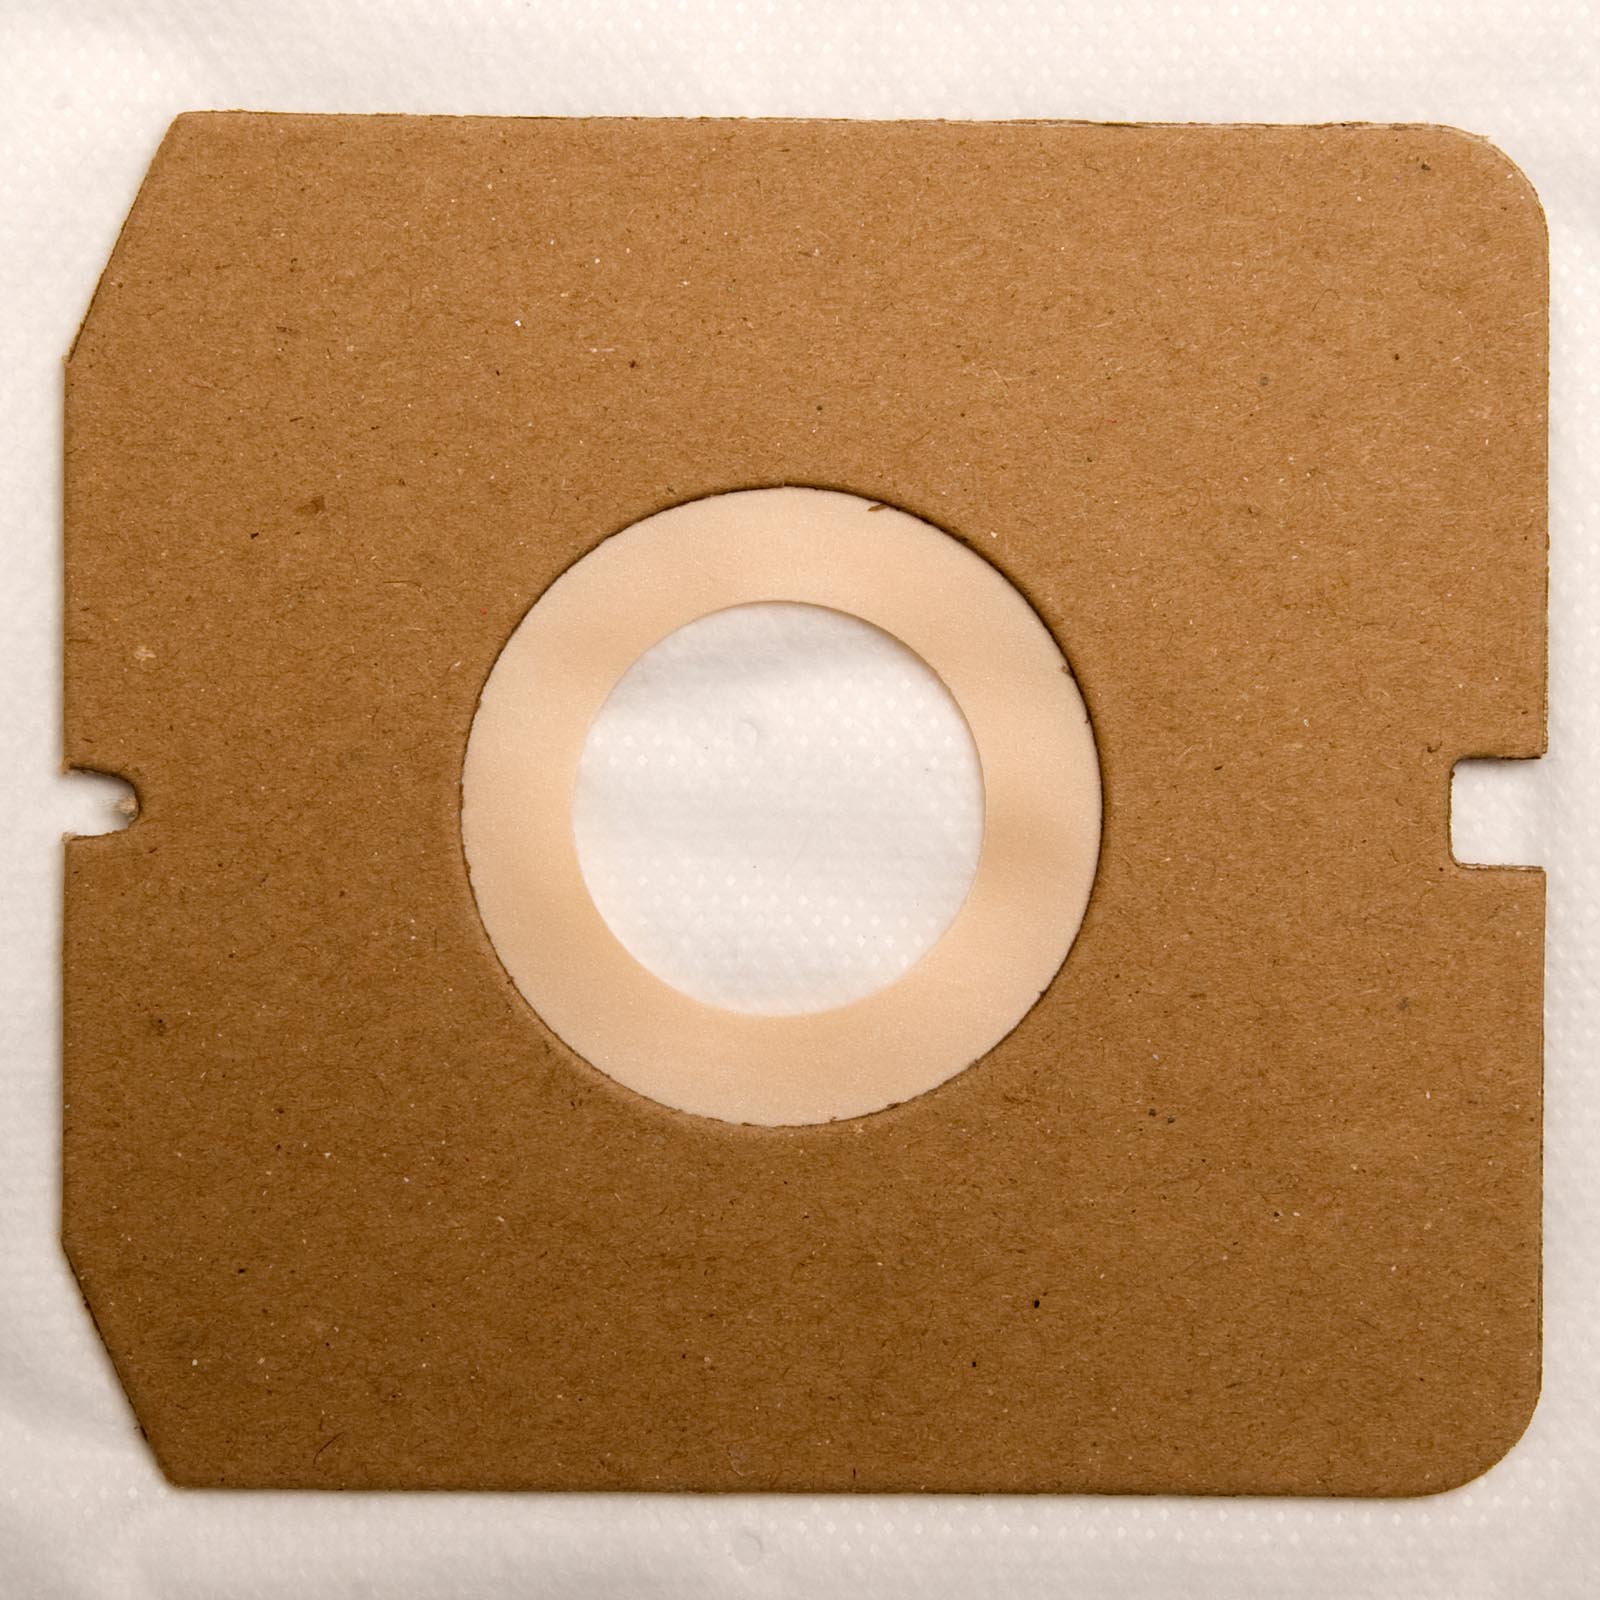 10 Staubsaugerbeutel kompatibel mit FAKIR Yellow, 10 Staubbeutel + 1 Mikro-Filter ähnlich Original Staubsaugerbeutel FAKIR 2019 804